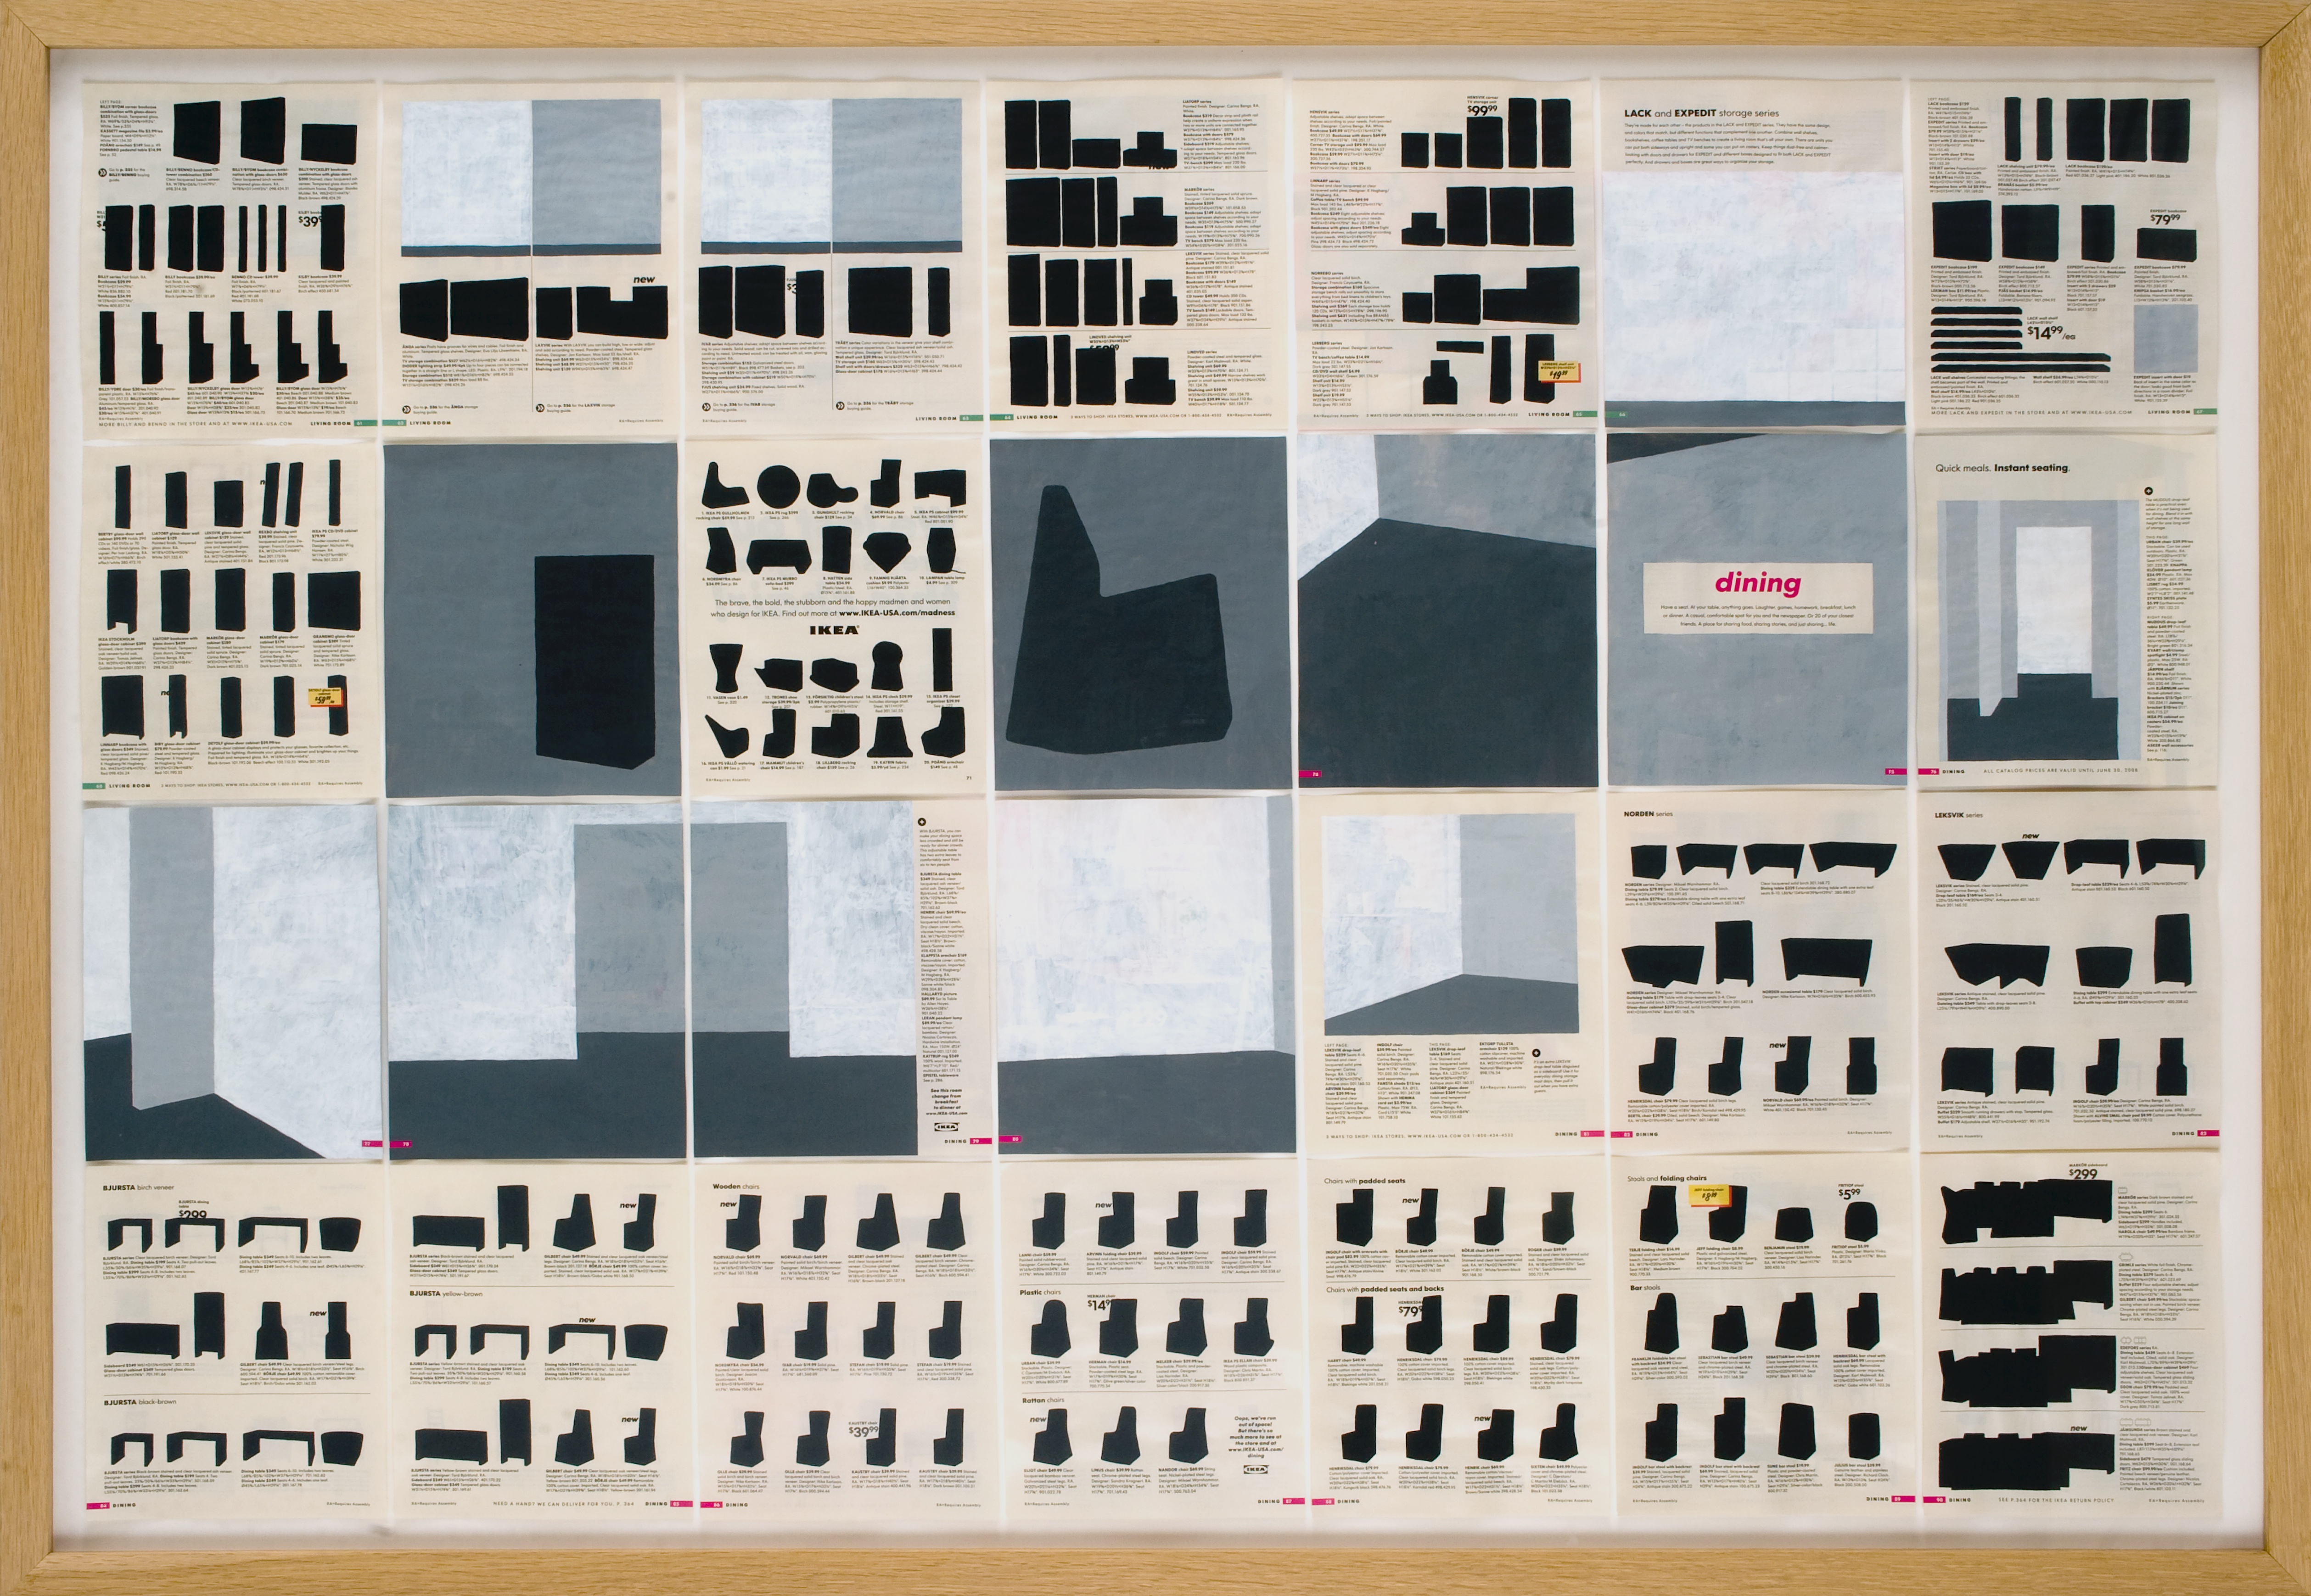 Jochen Gerner, n°3, Dining, 2008, Série Home, Acrylique sur papier imprimé, 100 x 144 cm avec cadre, courtesy galerie anne barrault